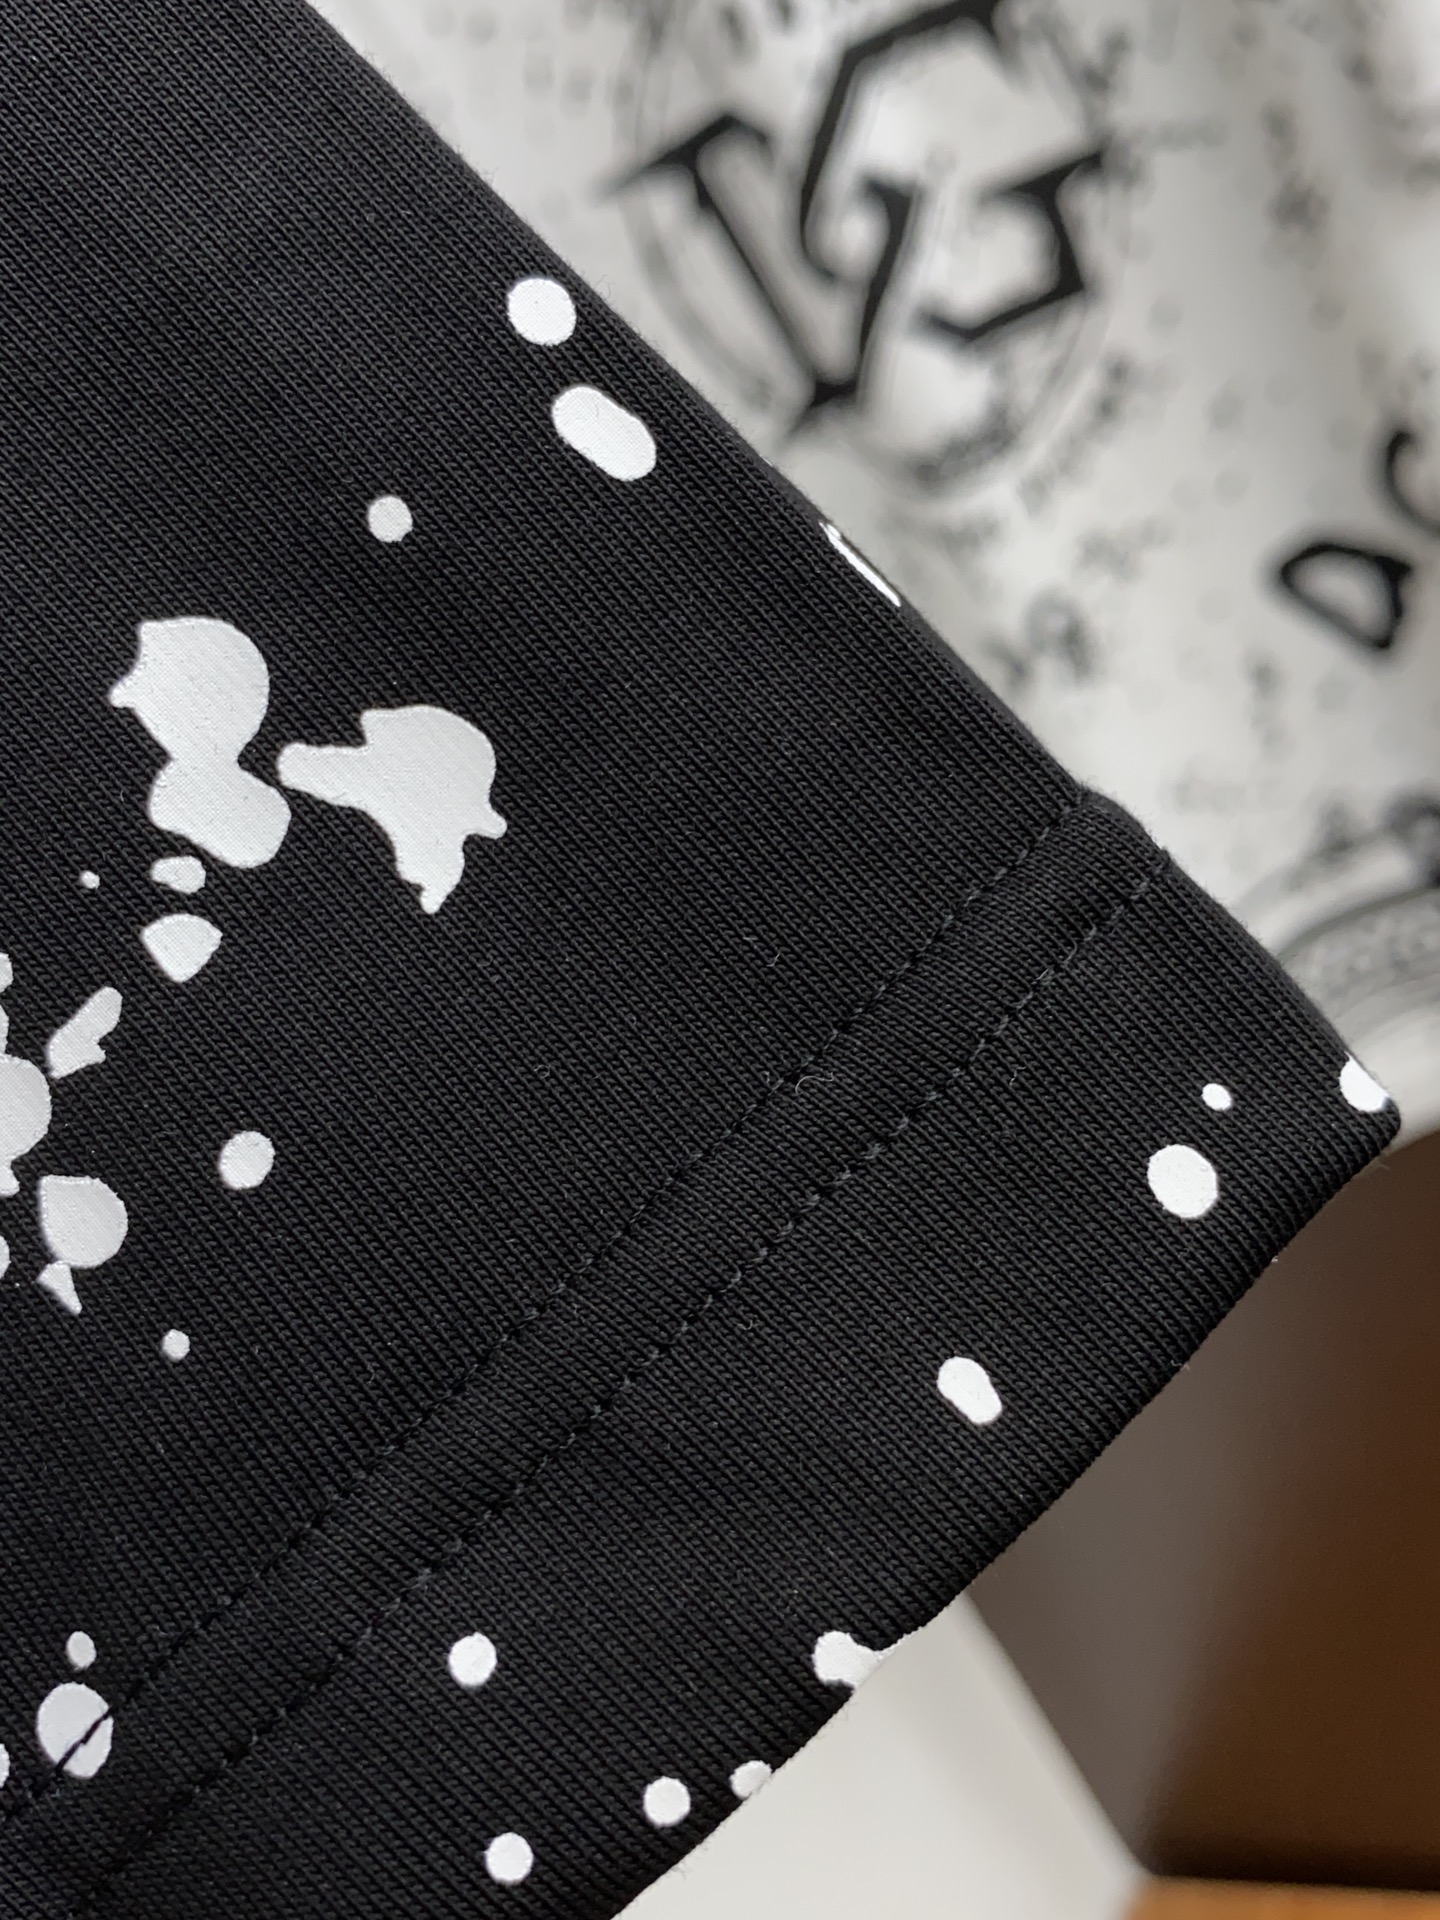 DG合身版型M-3xL24春夏早春新款短袖T恤顶级制作工艺进口纯棉面料手感细腻每个字母饱满立体清晰,一眼